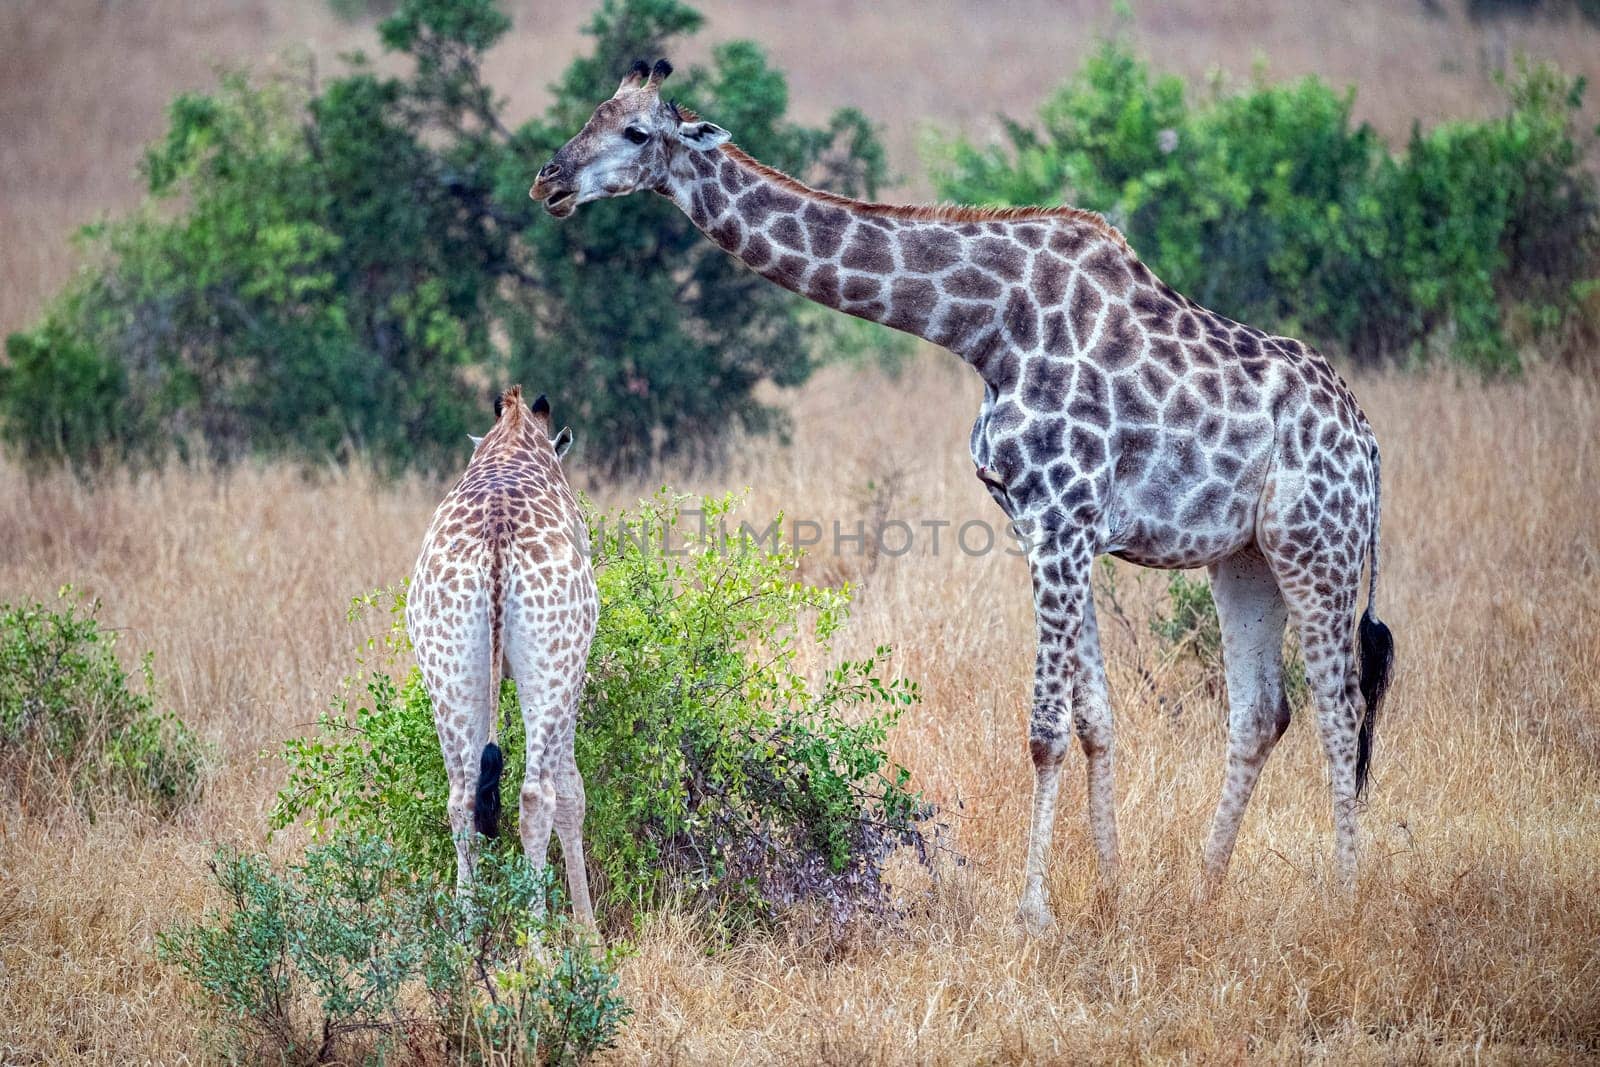 giraffe in kruger park south africa eating